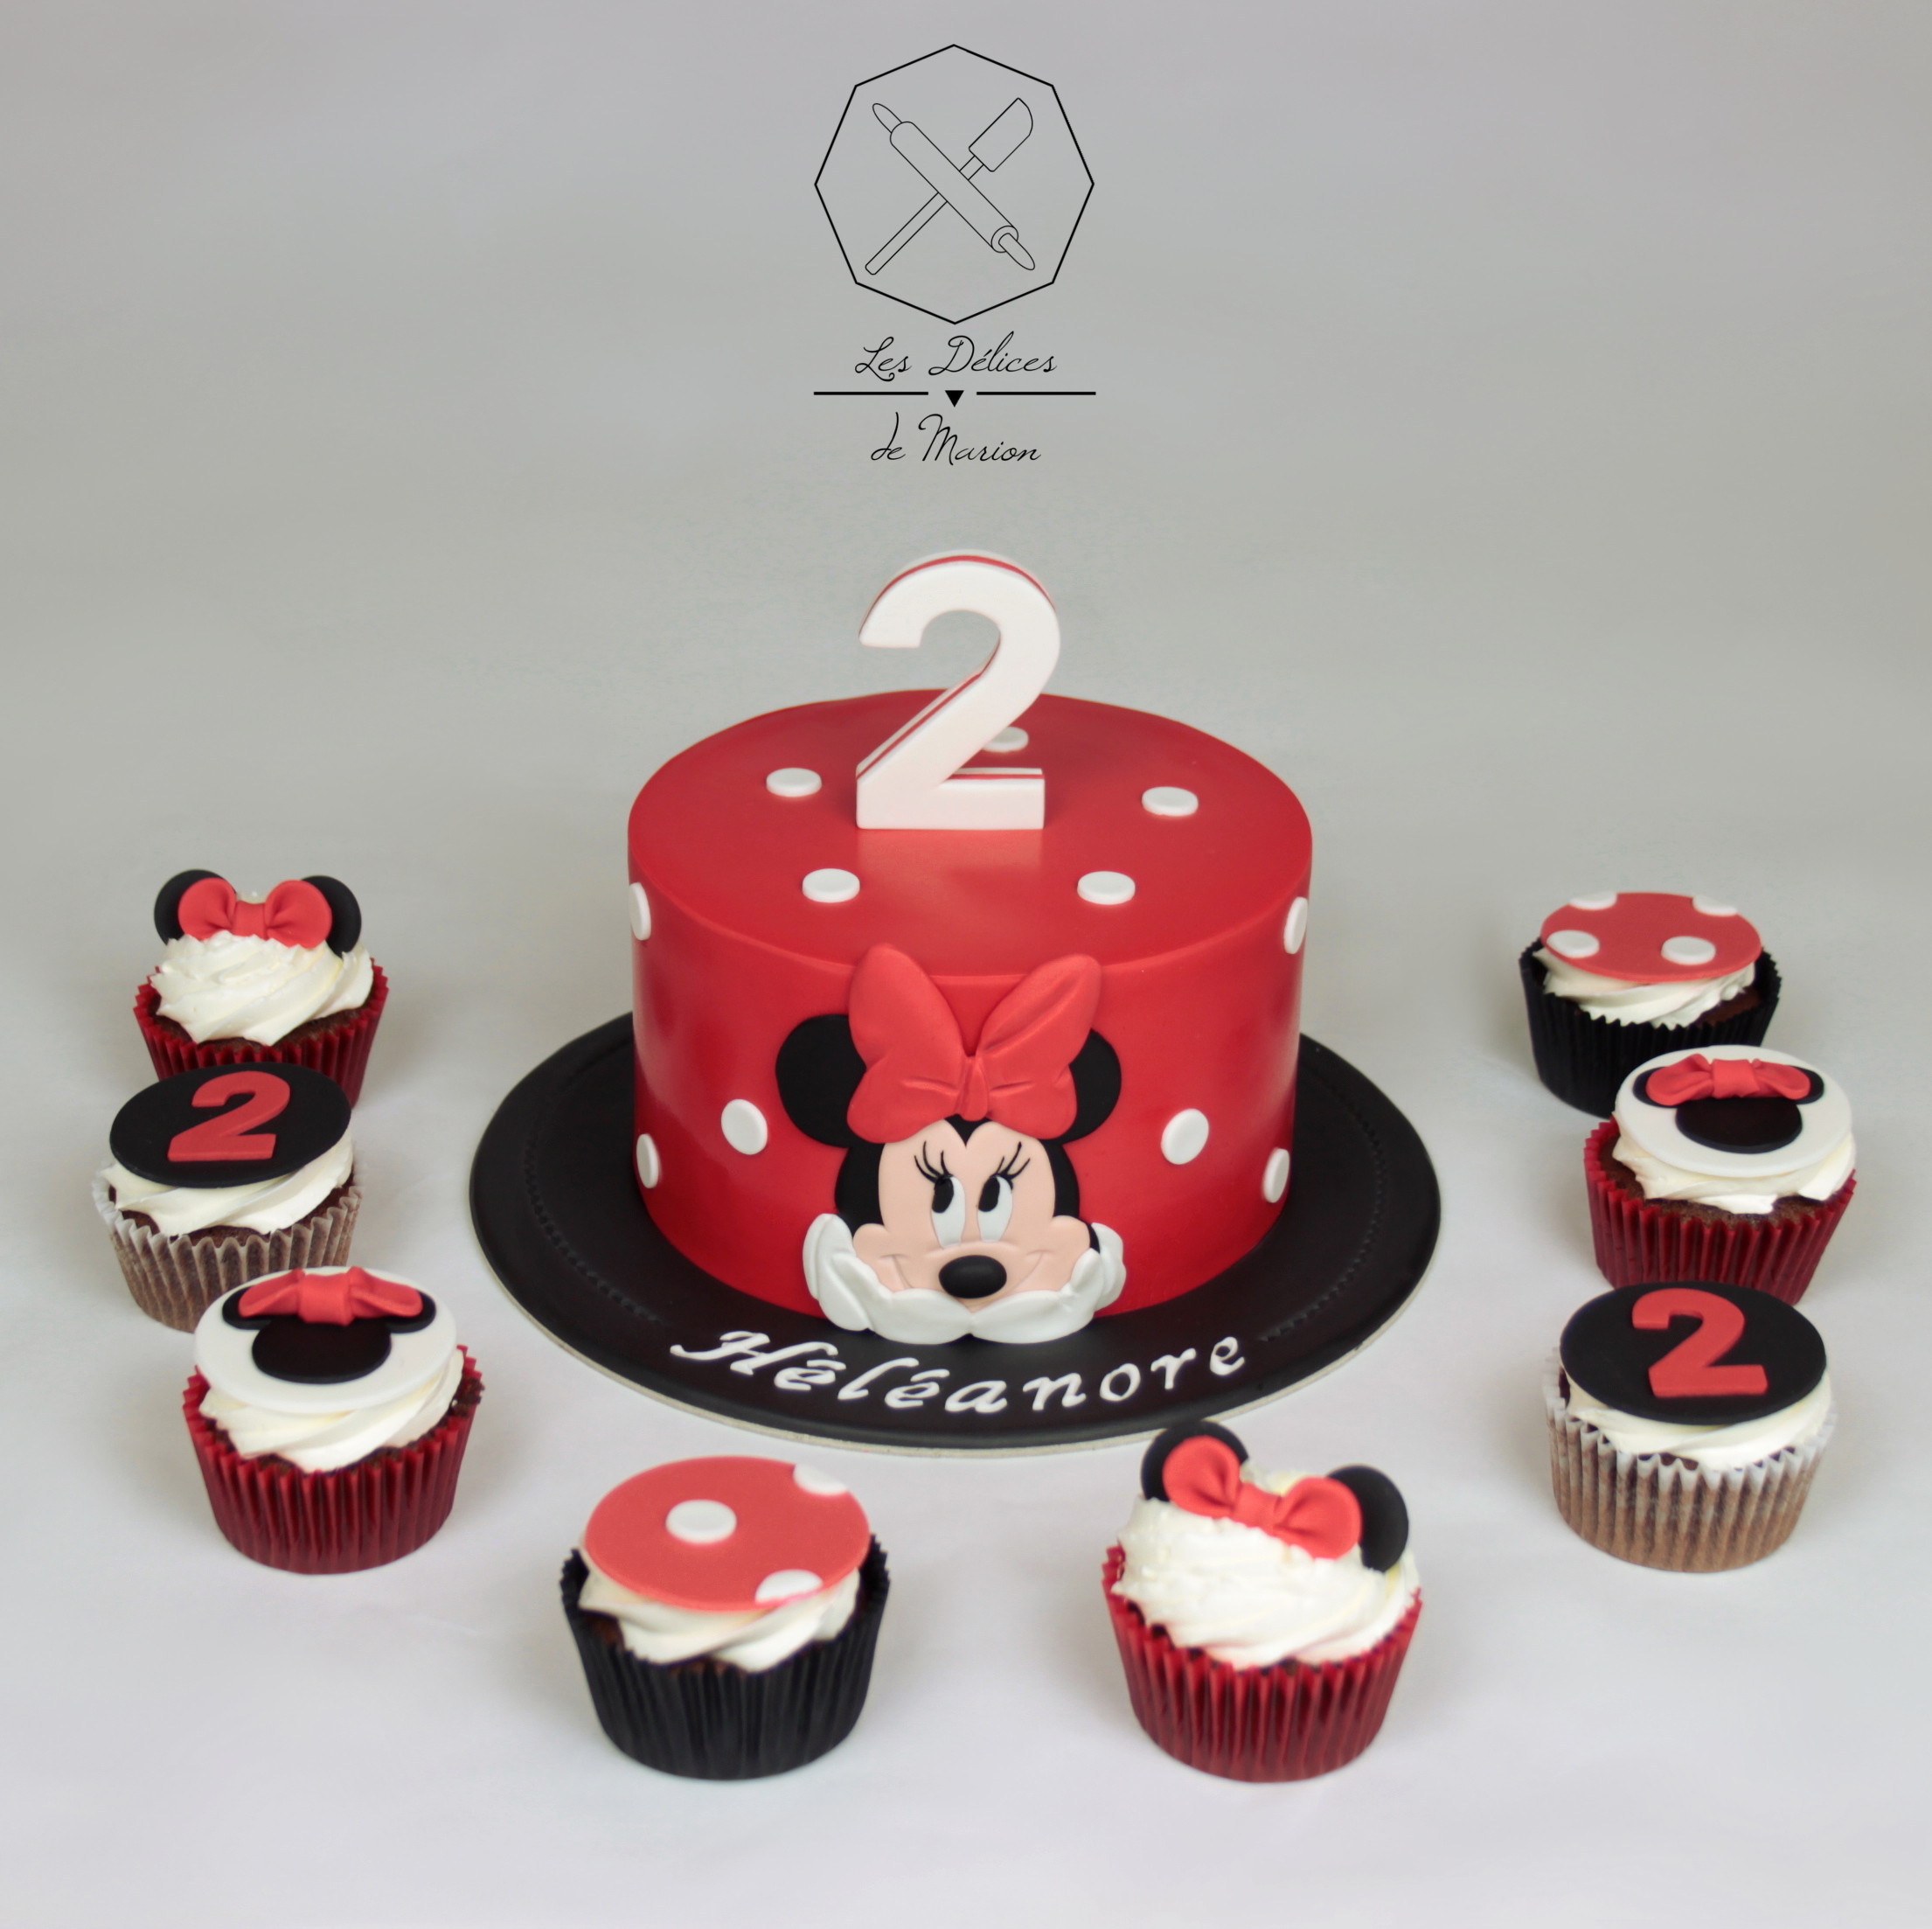 gateau_cupcakes_minnie_rouge_noir_cake-design_delices-marion